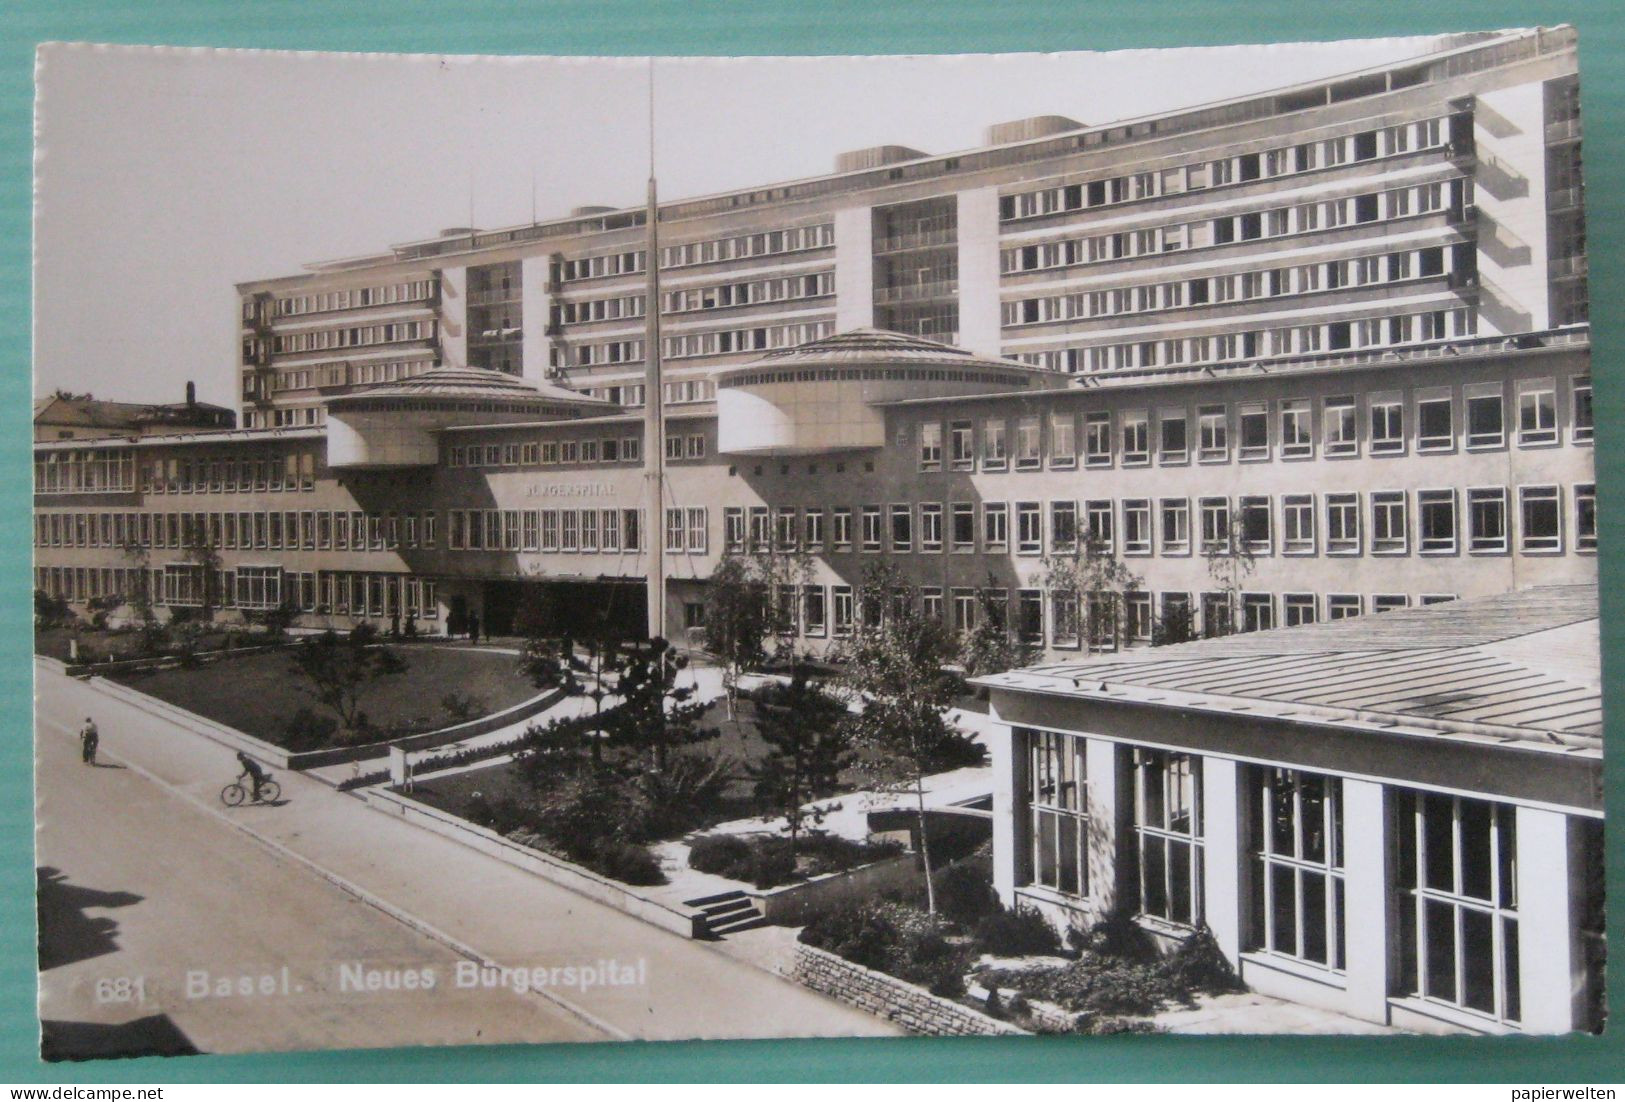 Basel - Neues Bürgerspital - Bâle